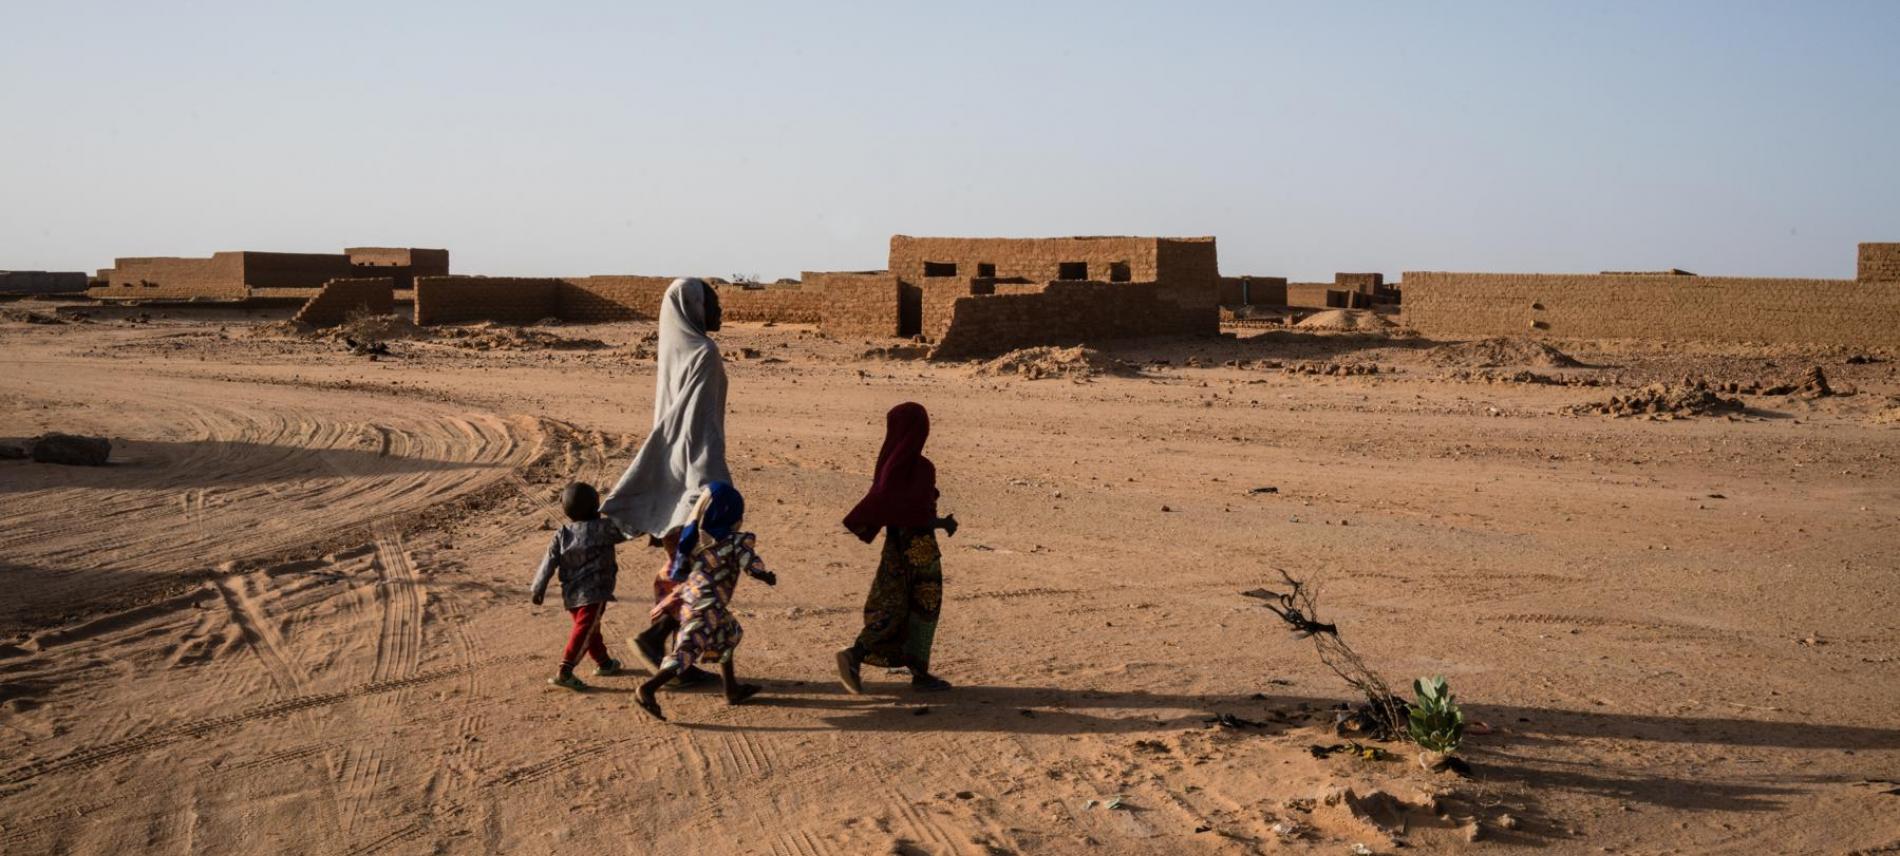 Die Menschen riskieren bei der Flucht durch die Sahara oftmals ihr Leben. Foto: Kristof Vadino